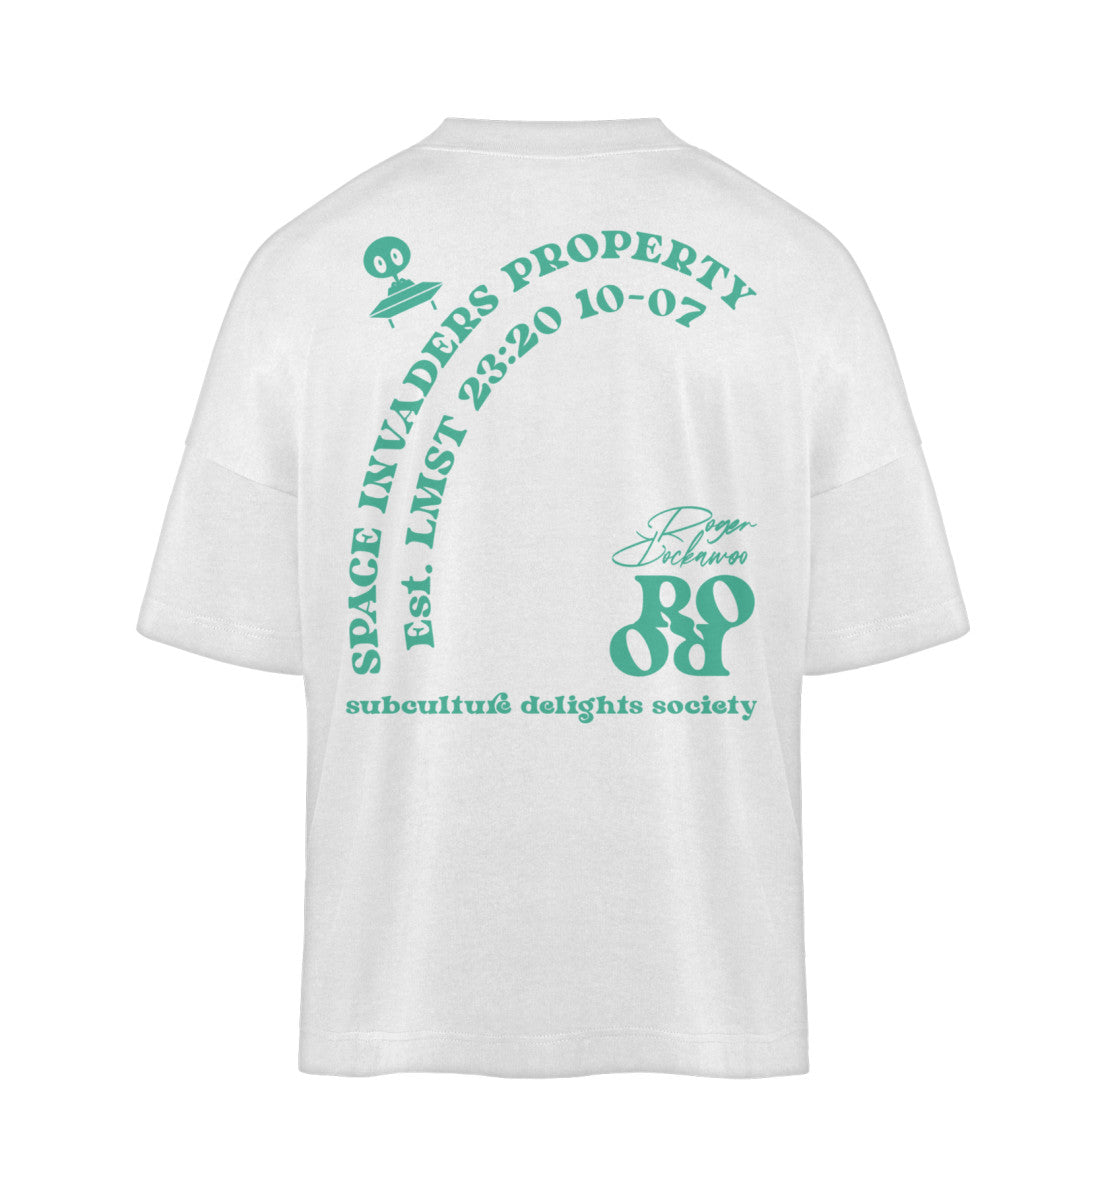 Weißes T-Shirt Unisex Oversize Fit für Frauen und Männer bedruckt mit dem Design der Roger Rockawoo Kollektion Space Invaders Property